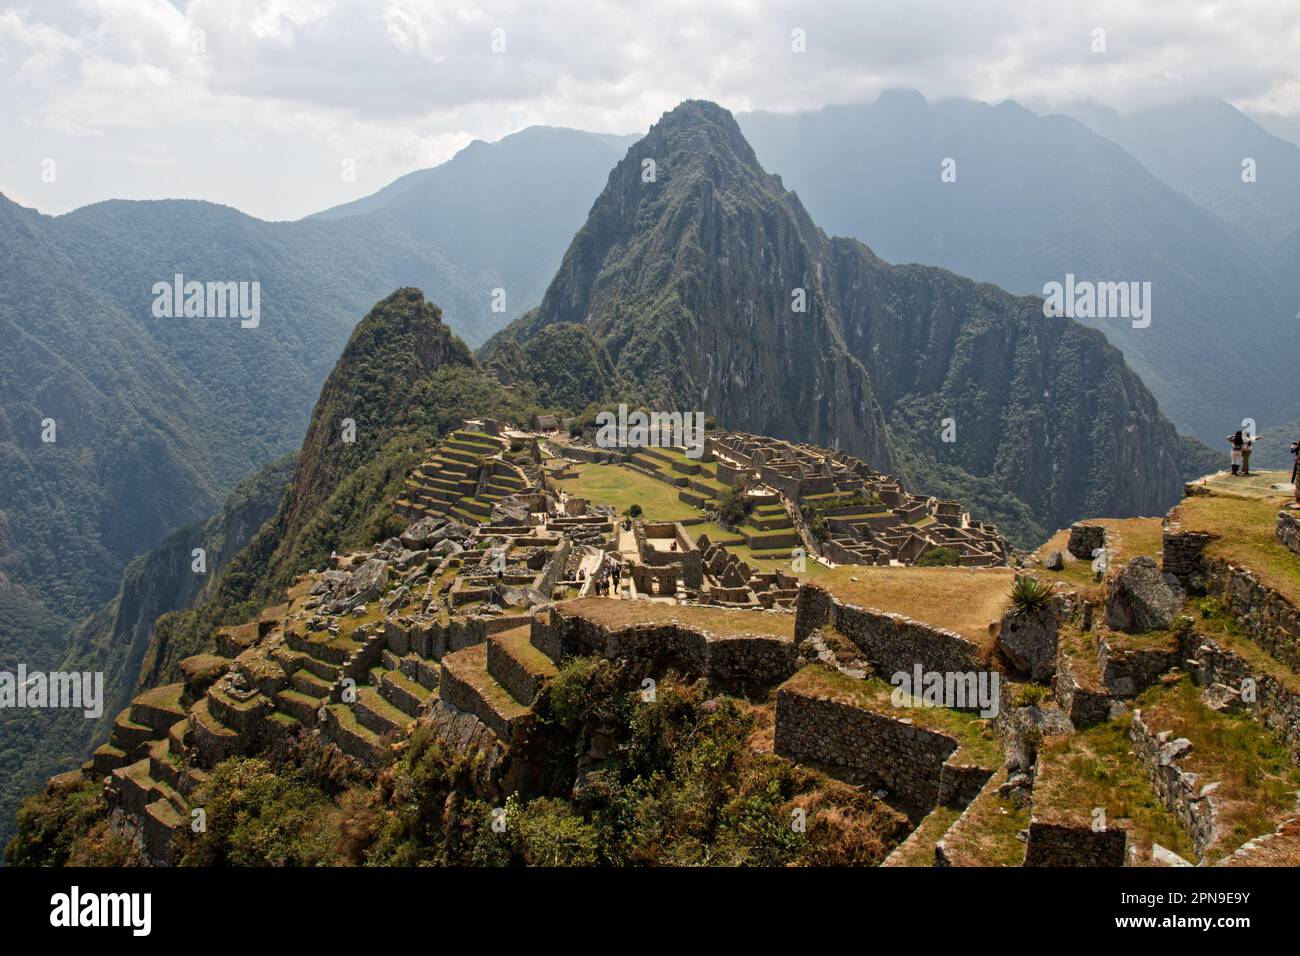 The iconic view of Machu Picchu, Cusco Department, Peru Stock Photo